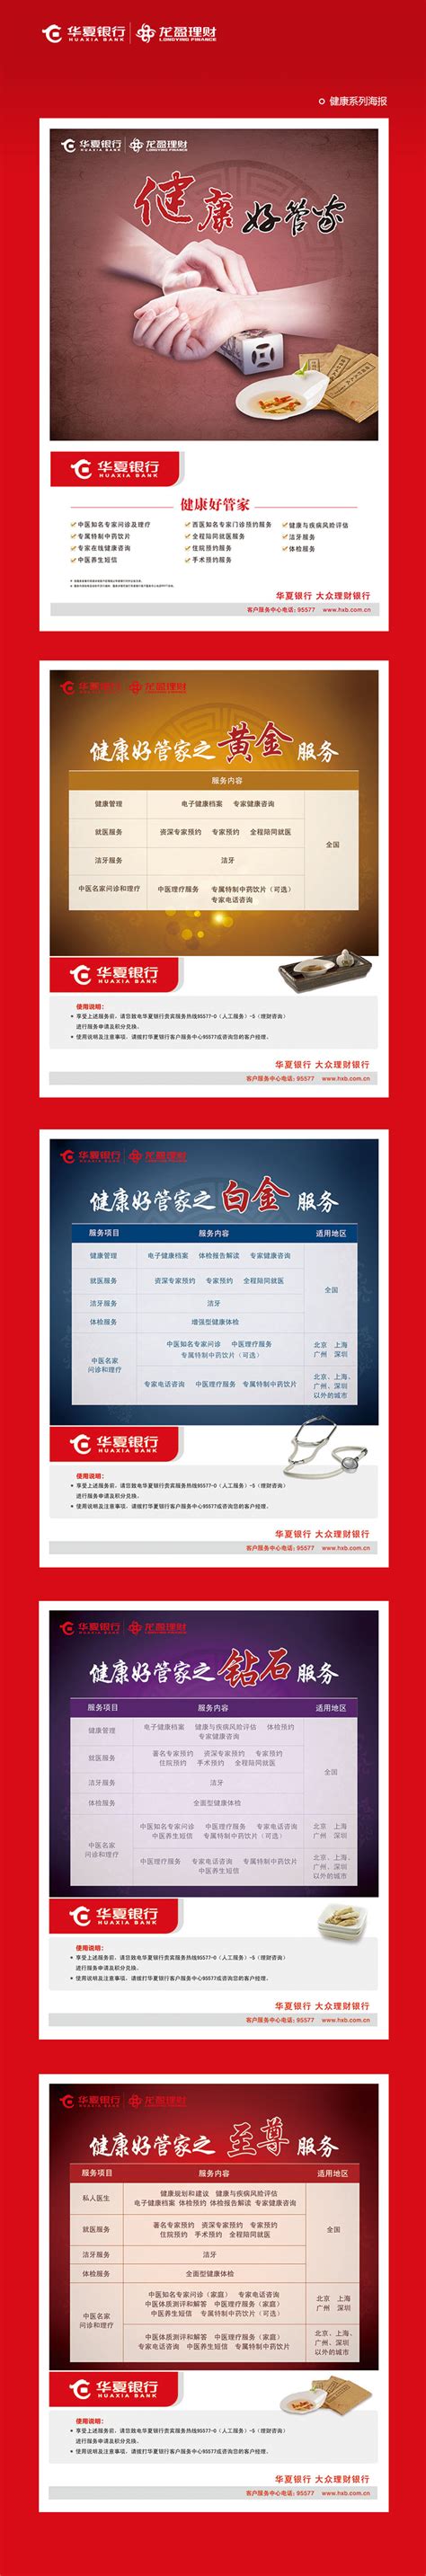 华夏银行理财产品系列海报1_设计-北京网站建设_H5开发_小程序开发_APP开发_SVG开发-惠尔科技